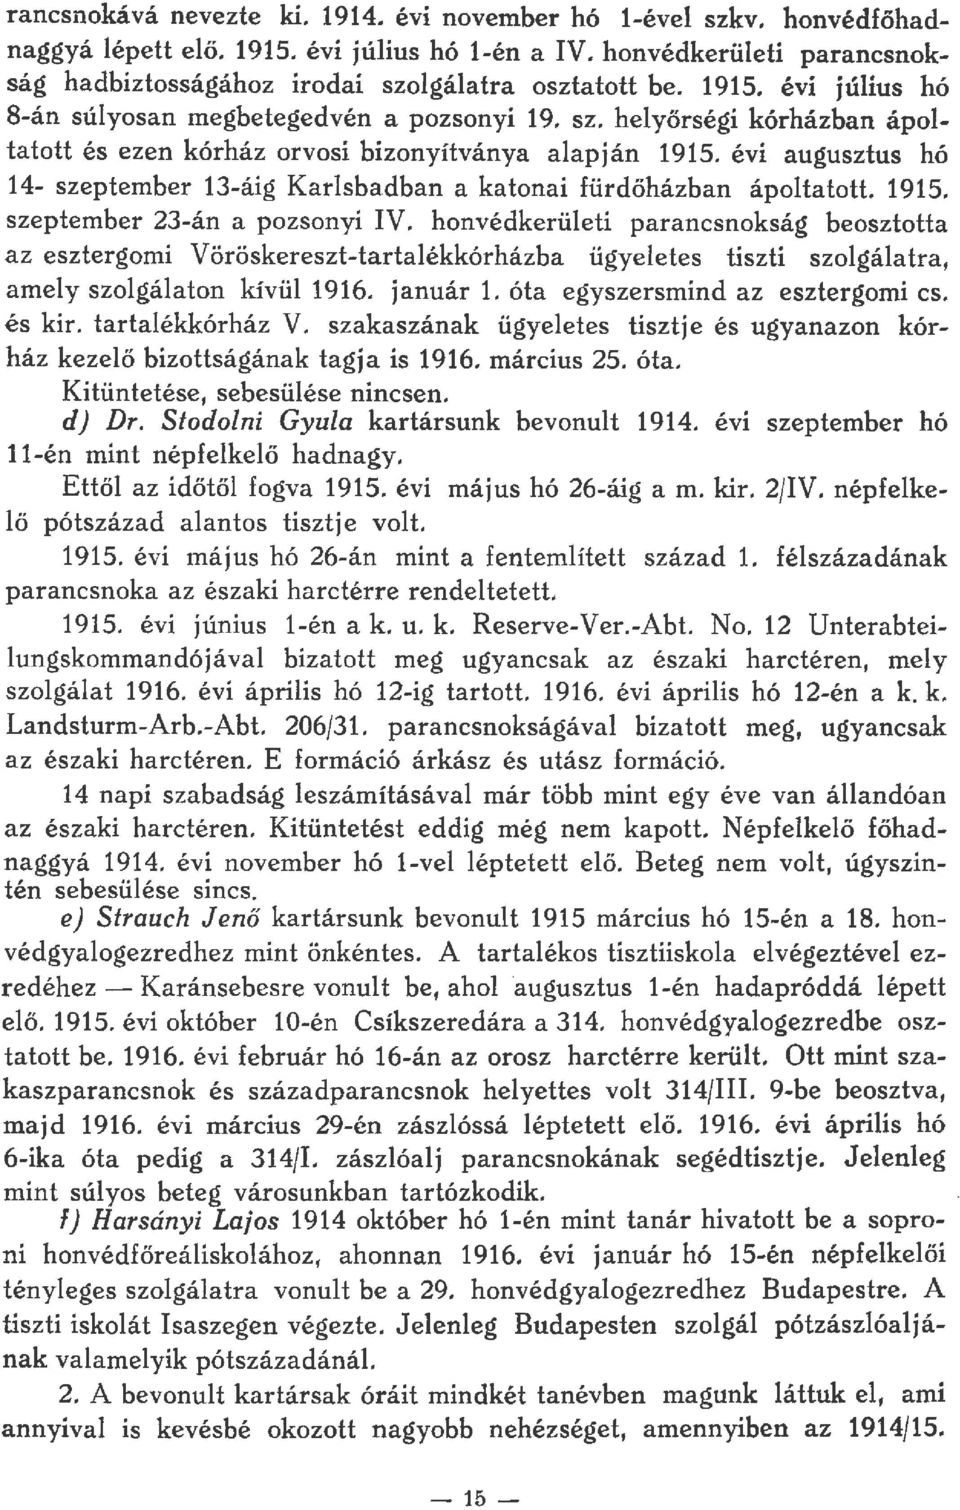 honvédkerüeti parancsnokság beosztotta az esztergomi Vöröskereszt-tartaékkórházba ügyeetes tiszti szogáatra, amey szagáaton kívü 1916. január 1. óta egyszersmind az esztergomi cs. és kir.